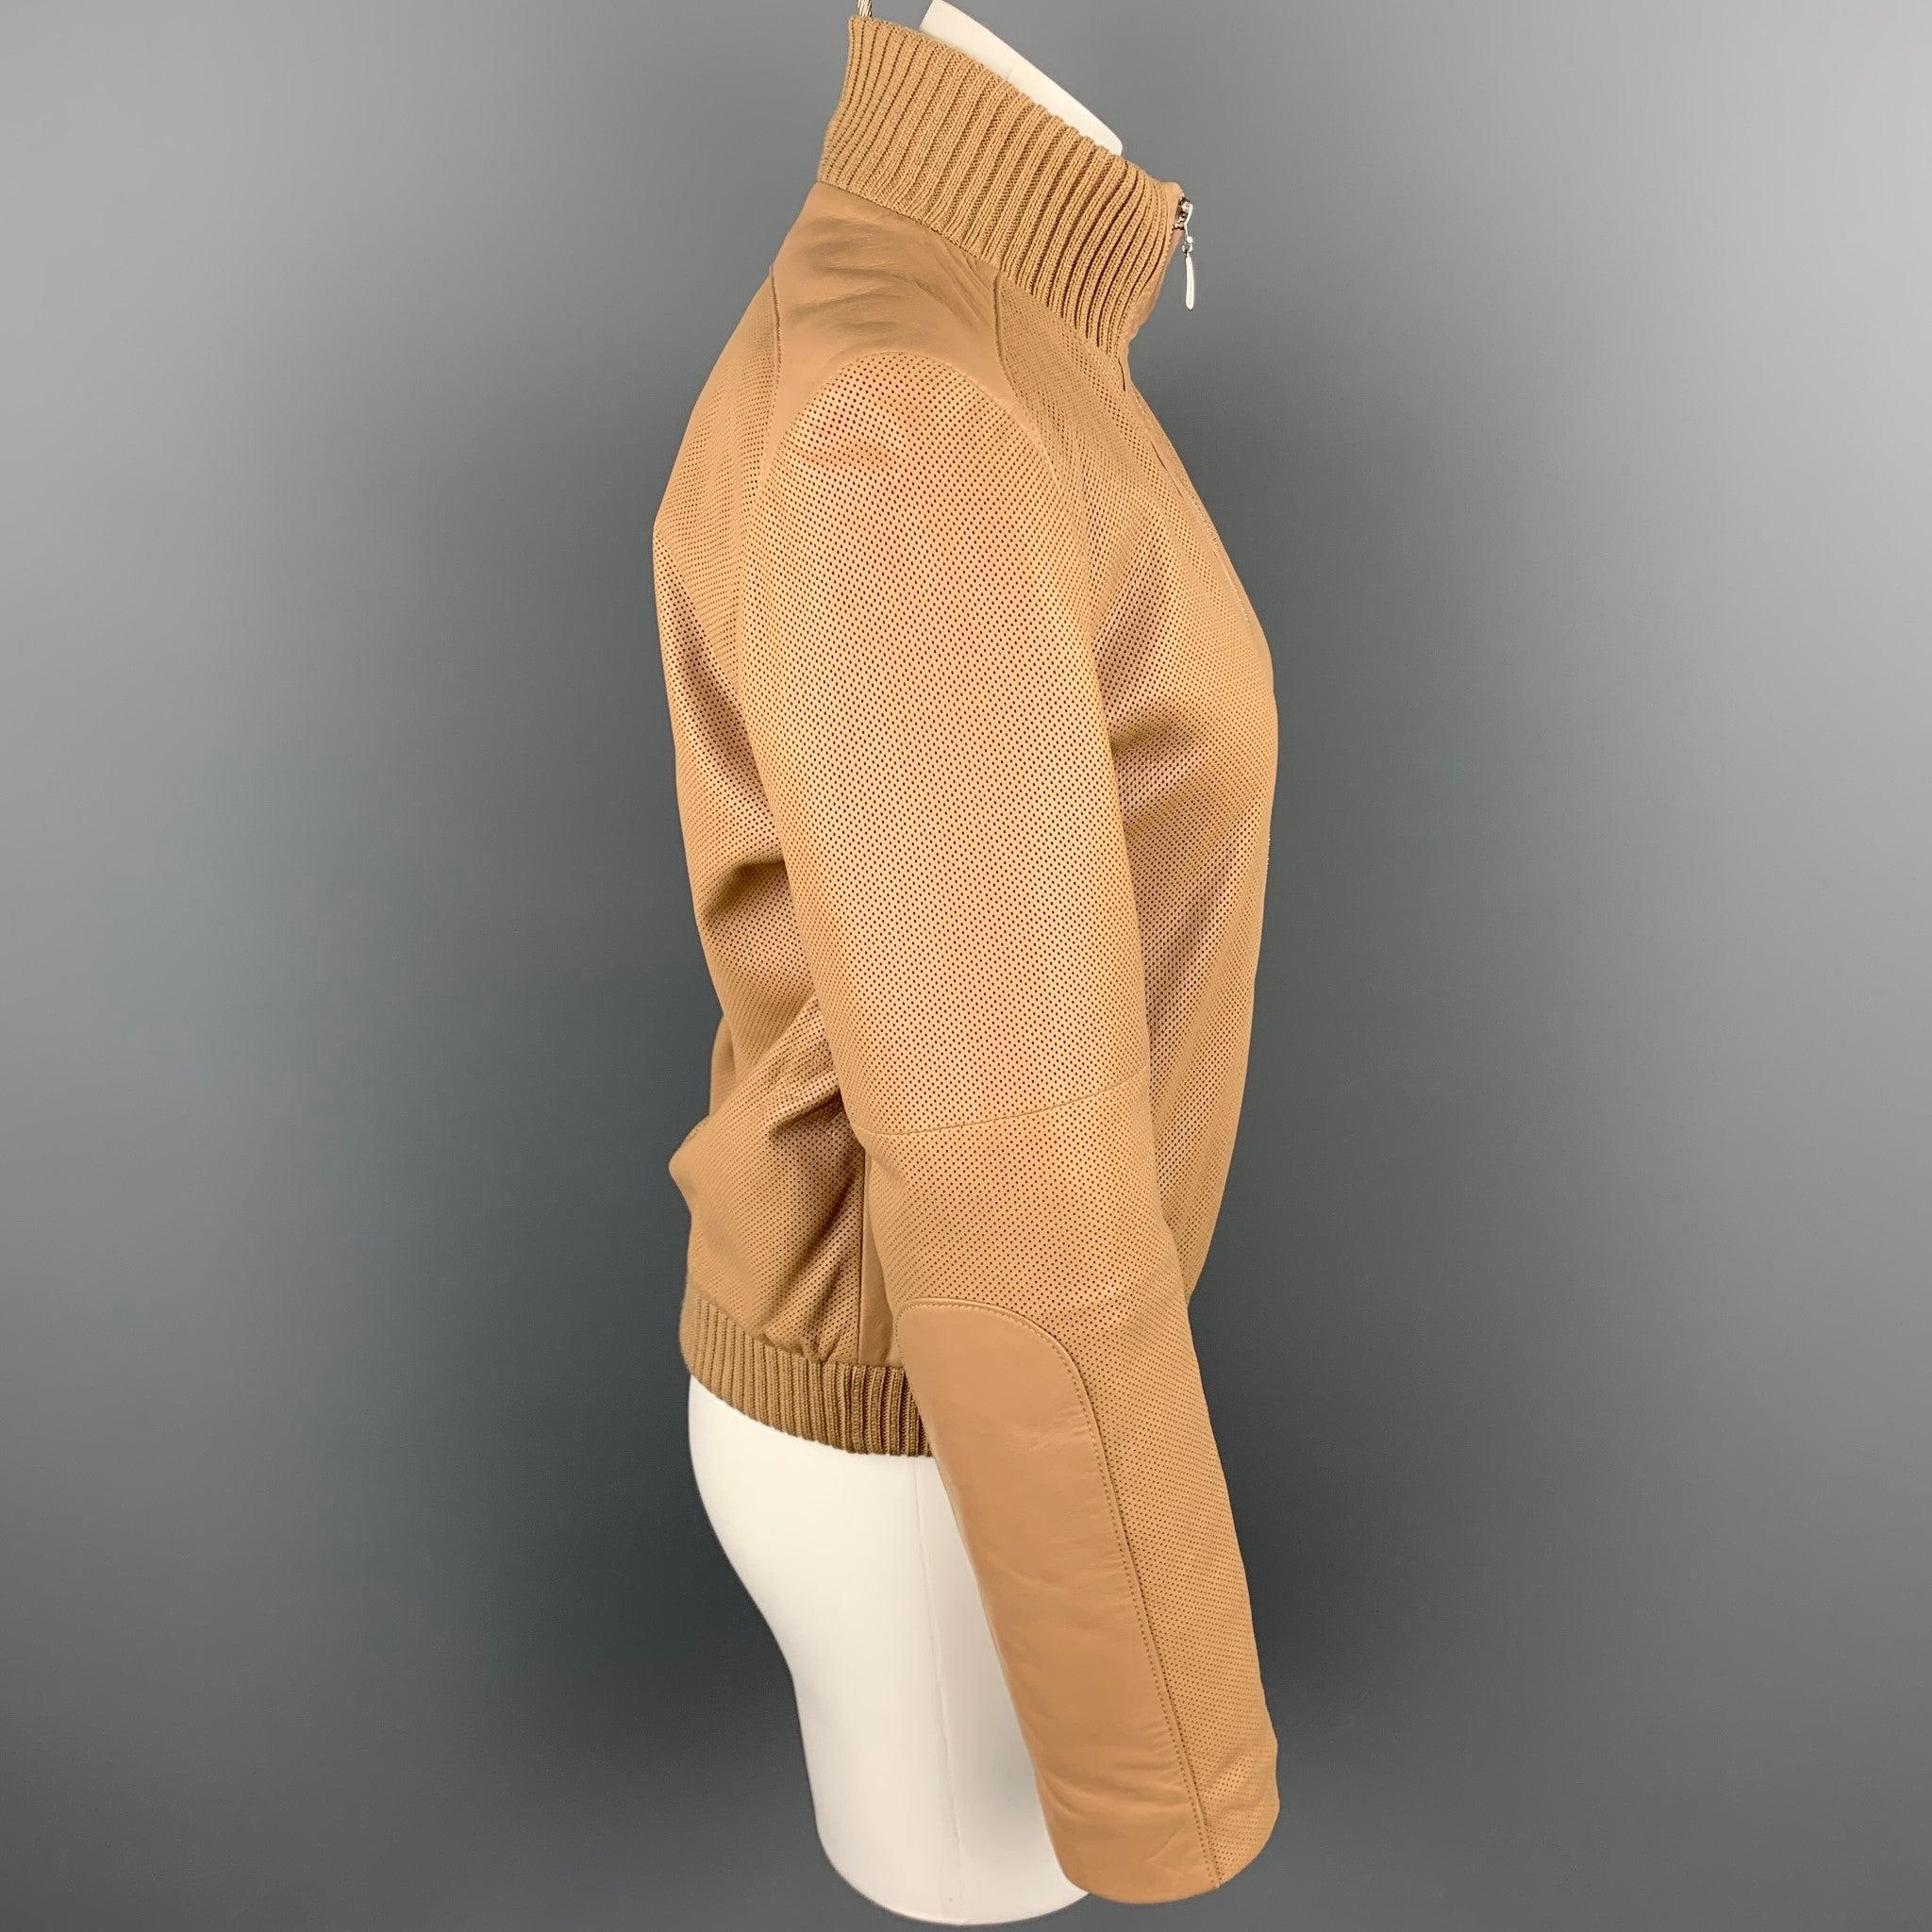 La veste ESCADA est réalisée en cuir perforé beige avec une doublure matelassée. Elle présente un style bombardier, des manches en laine, des poches fendues et une fermeture à glissière.
Très bien
Etat d'occasion. 

Marqué :   34 

Mesures : 
